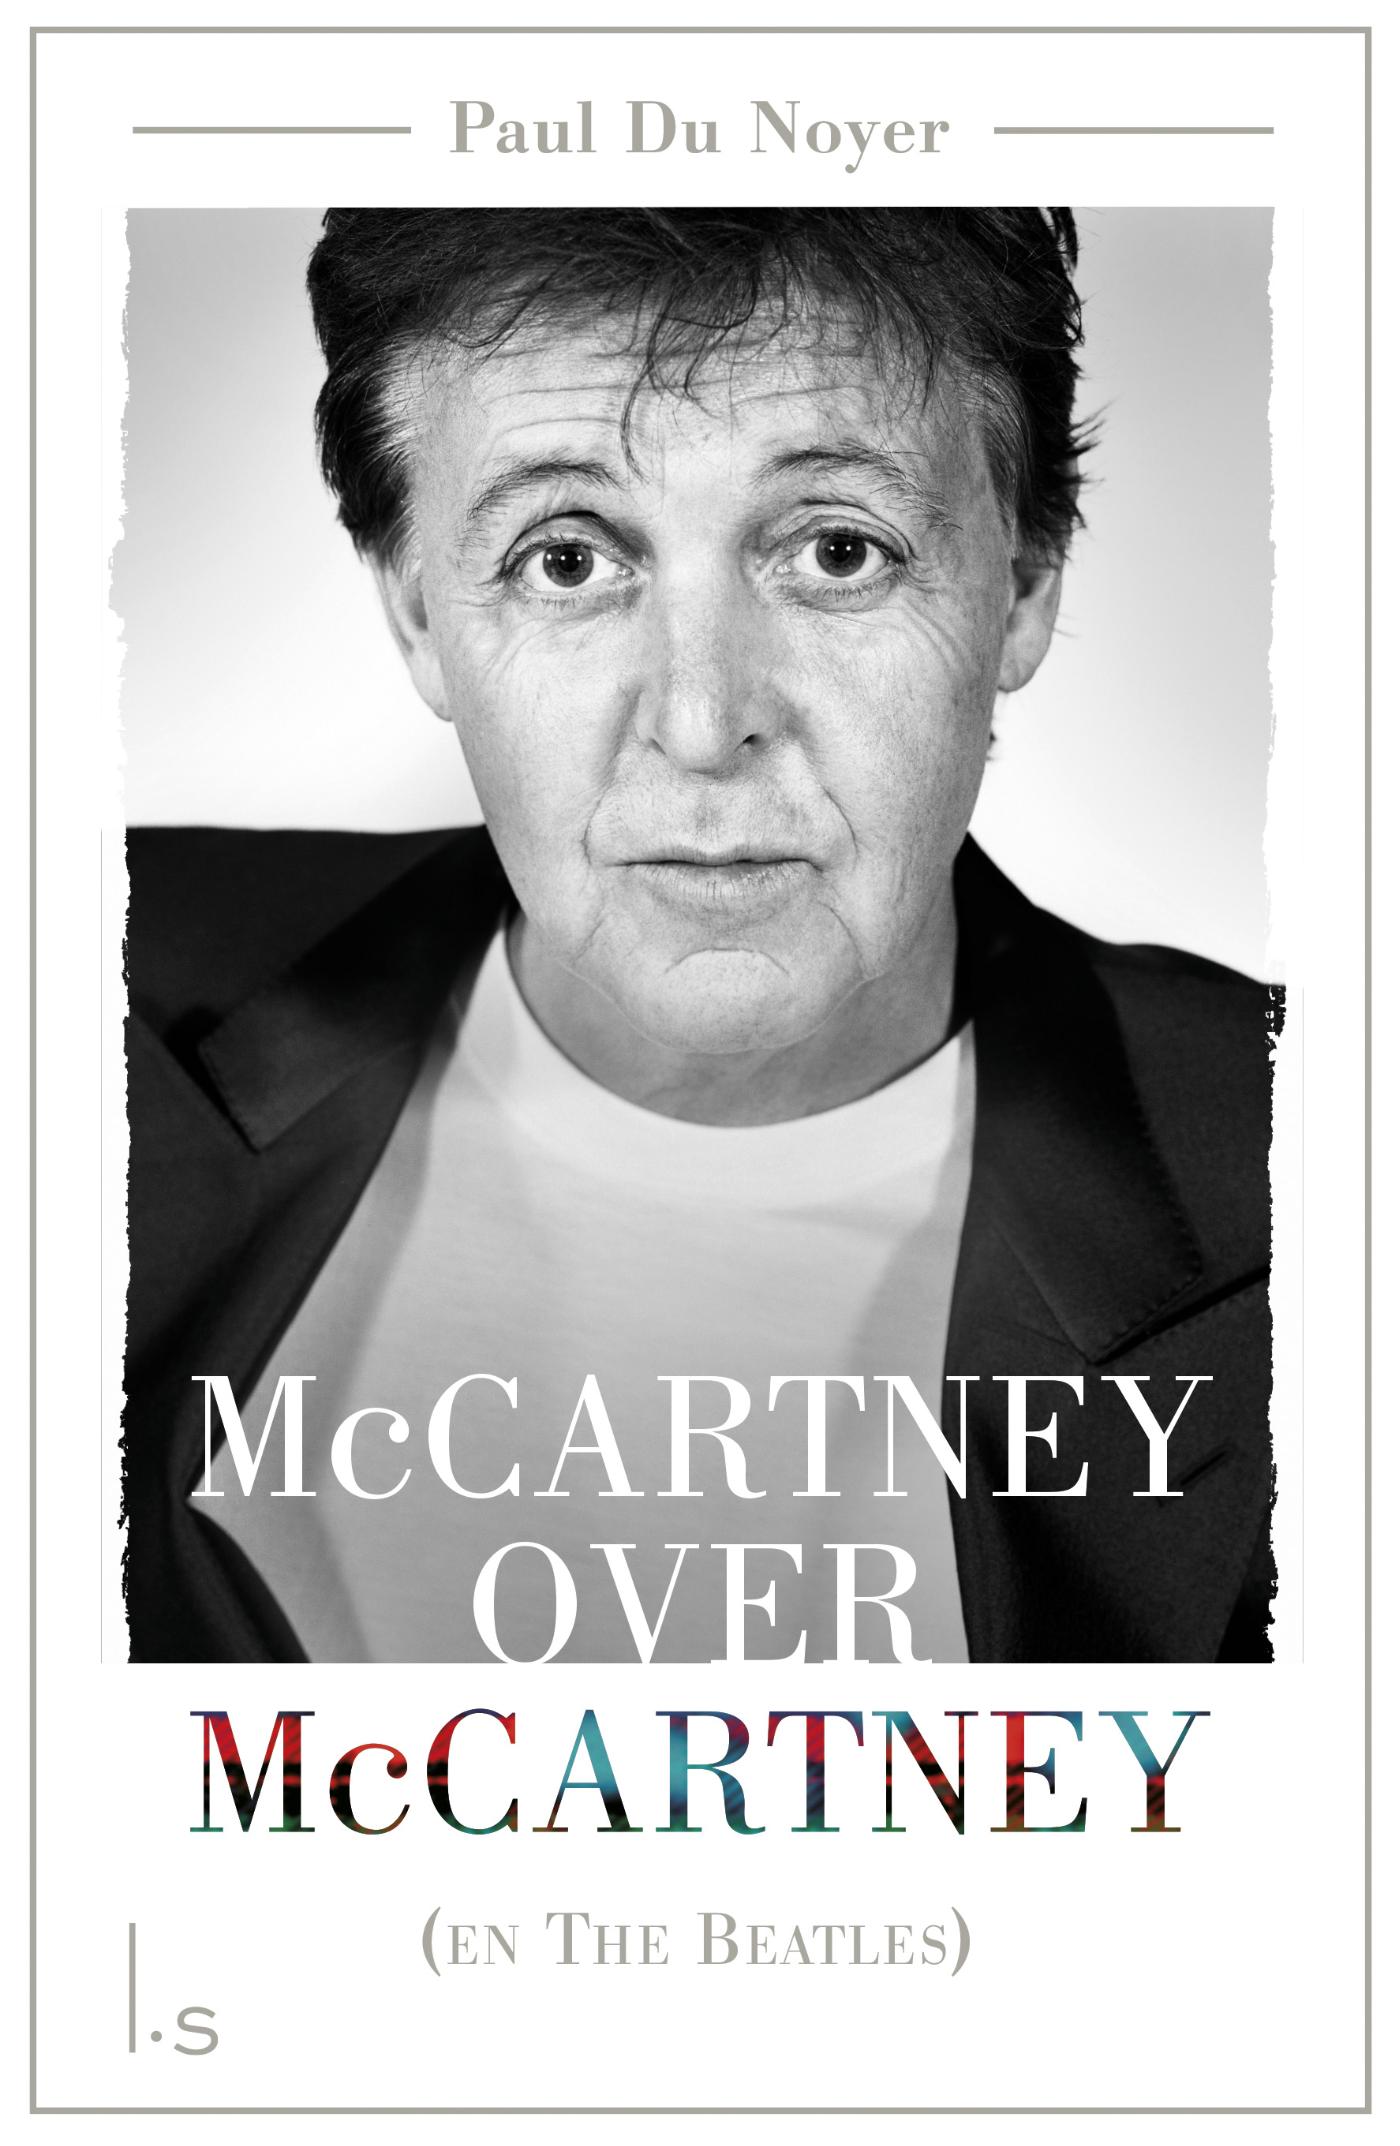 McCartney over McCartney (en The Beatles) (Ebook)